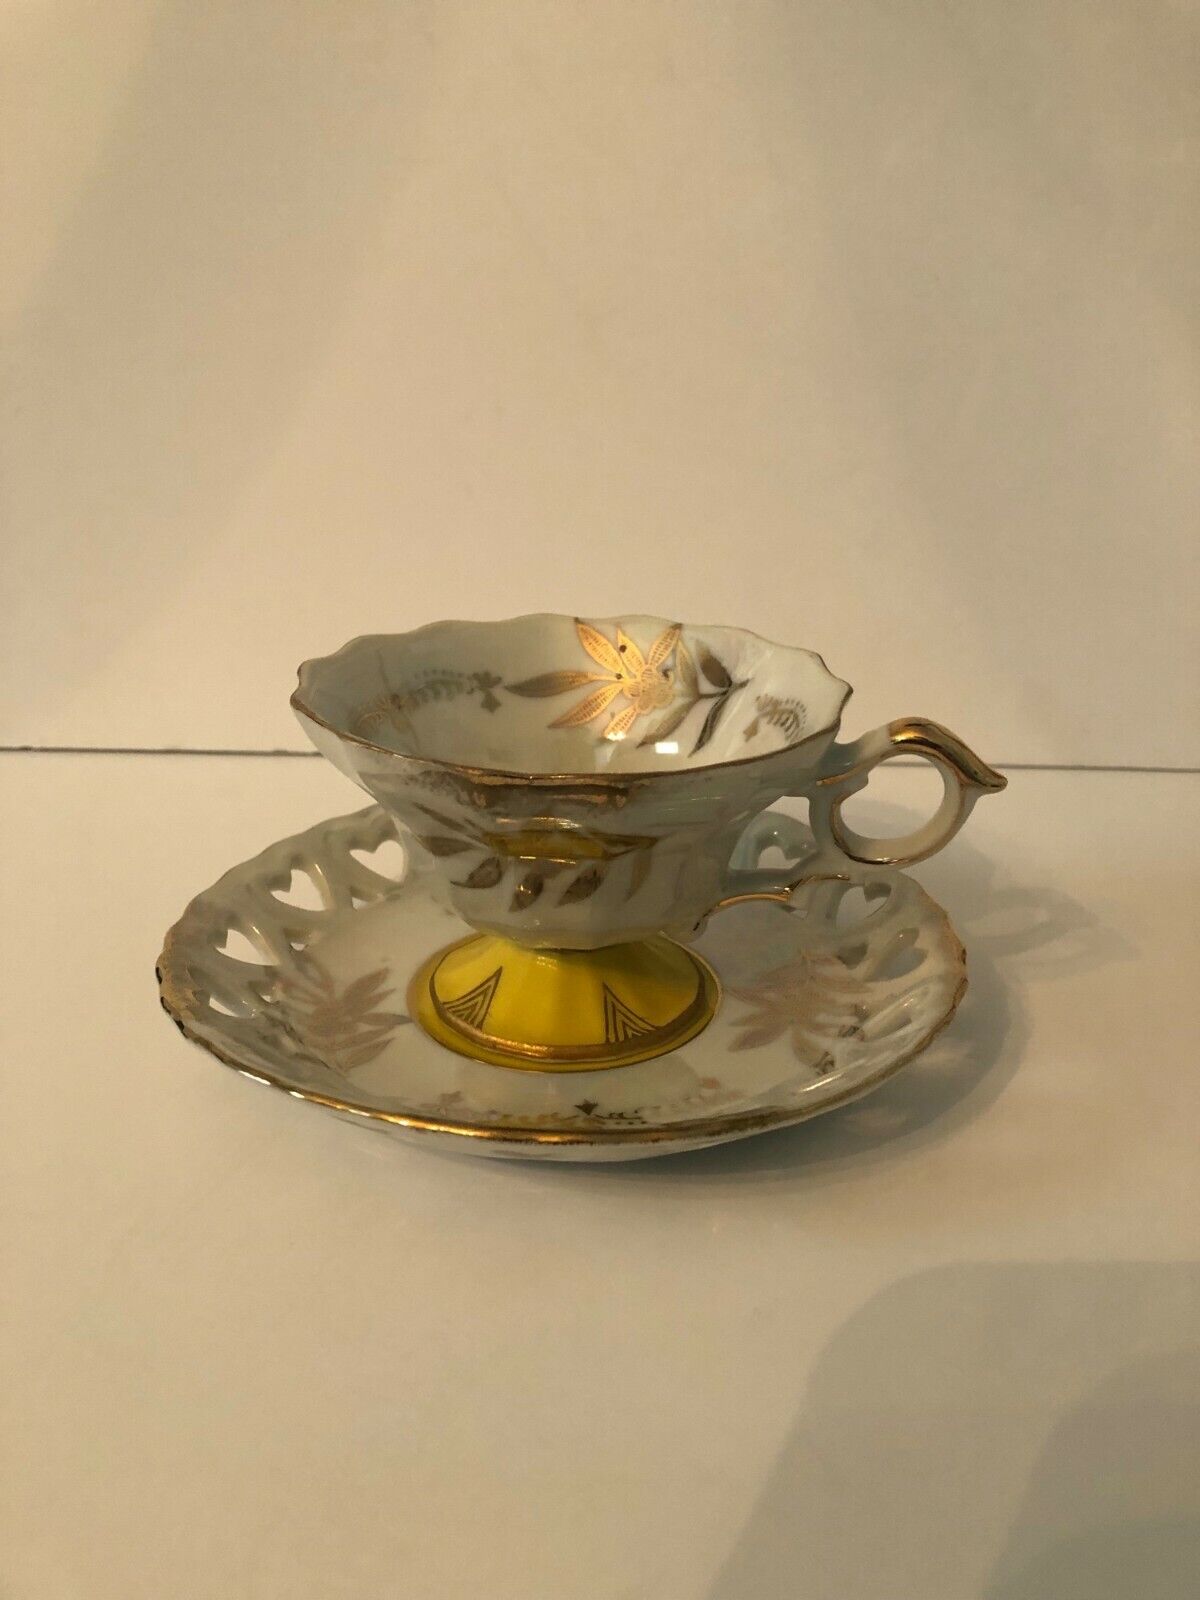 Vintage Royal Halsey Pedestal Teacup & Saucer